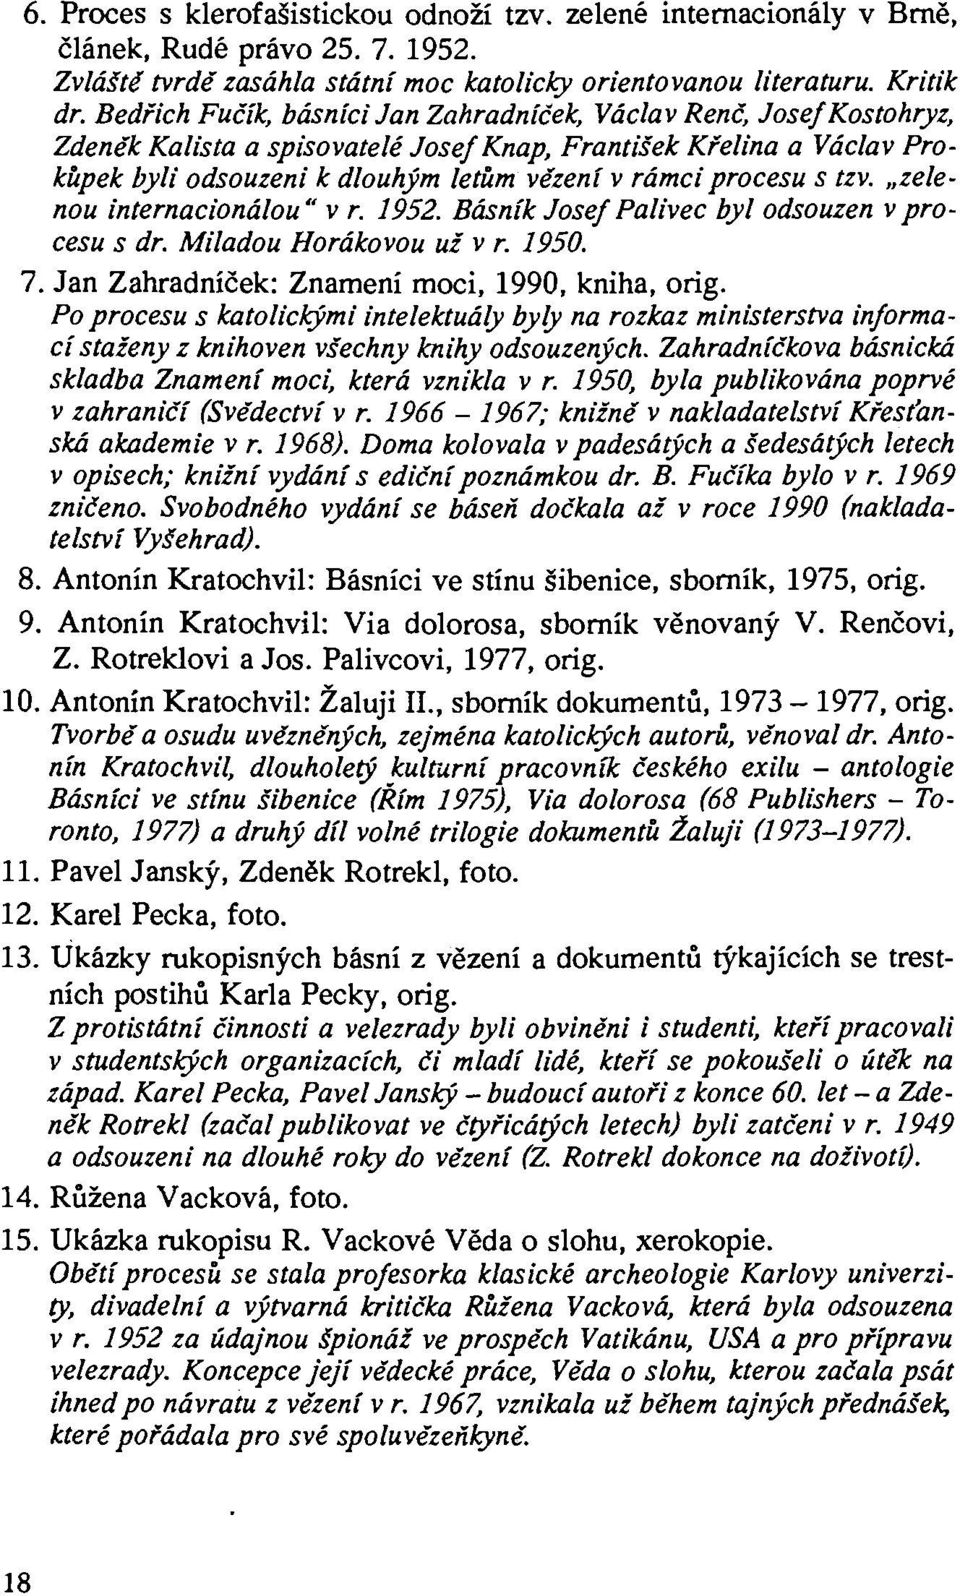 procesu s tzv. zelenou internacionálou" v r. 1952. Básník Josef Palivec byl odsouzen v procesu s dr. Miladou Horákovou už v r. 1950. 7. Jan Zahradníček: Znamení moci, 1990, kniha, orig.